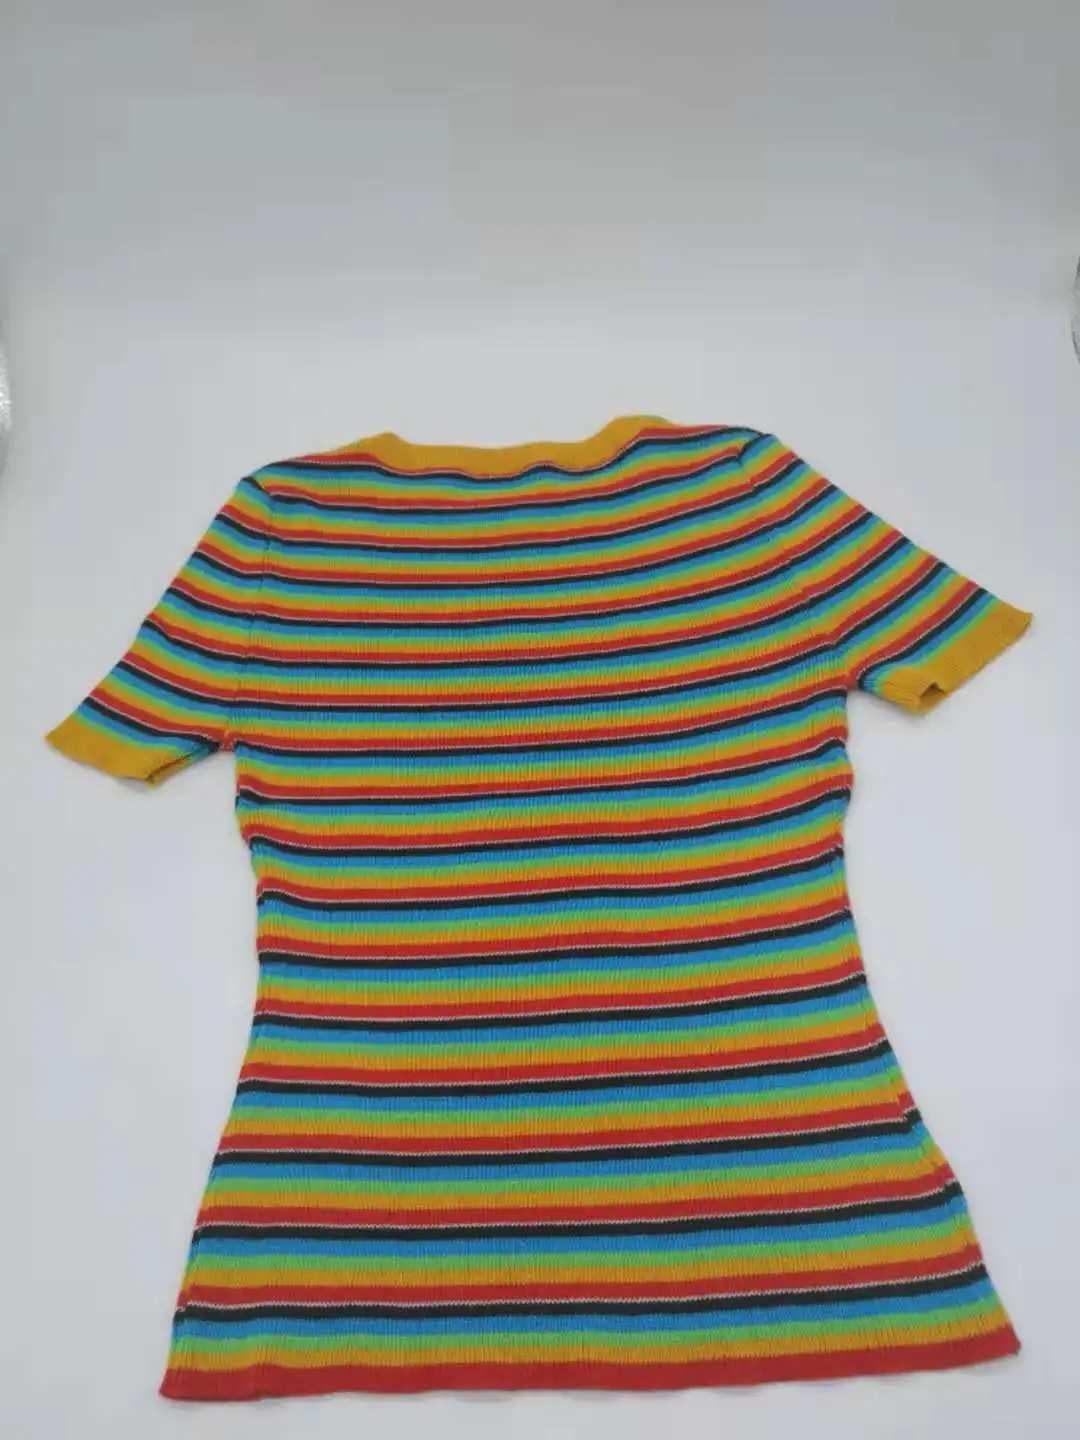 Unif для девочек радужные полосатые женские трикотажные укороченные топы свитер летняя уличная одежда женская трикотажная футболка футболки свитер